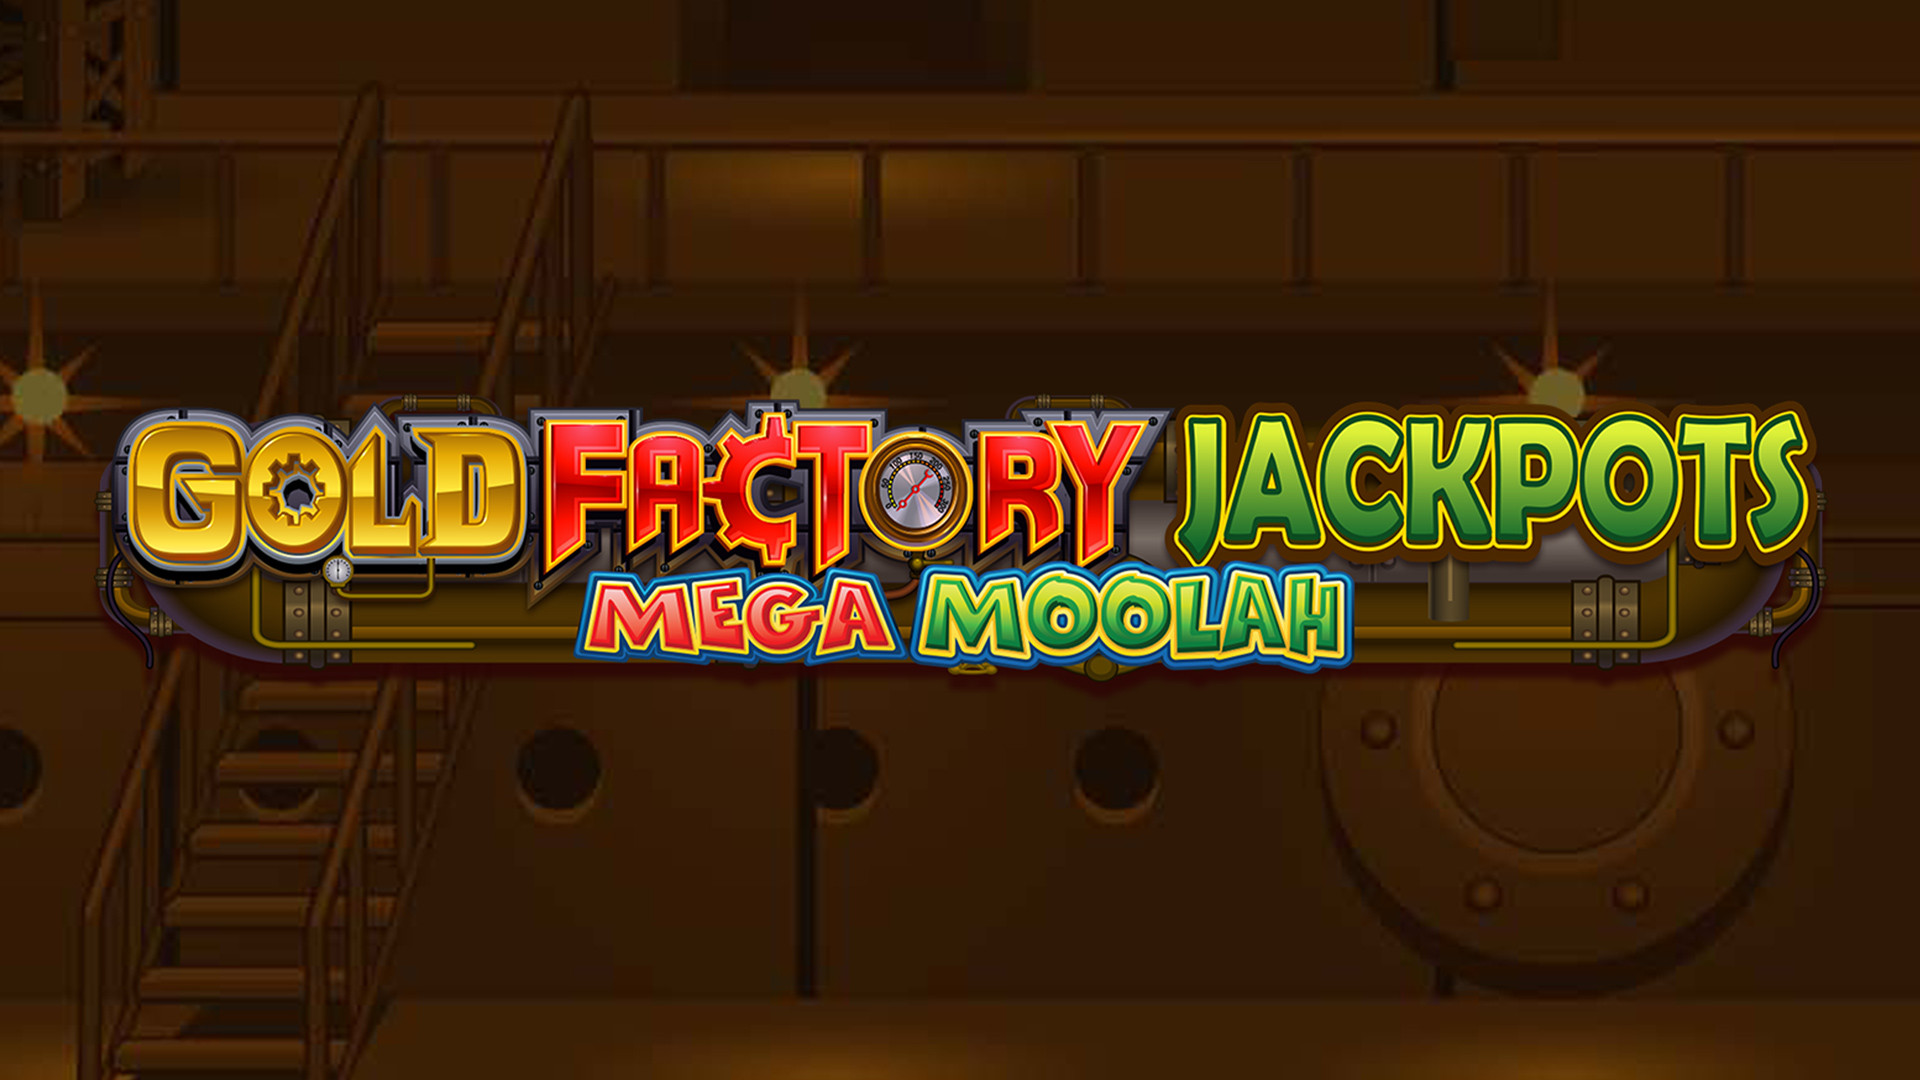 Gold Factory Jackpots Mega Moolah